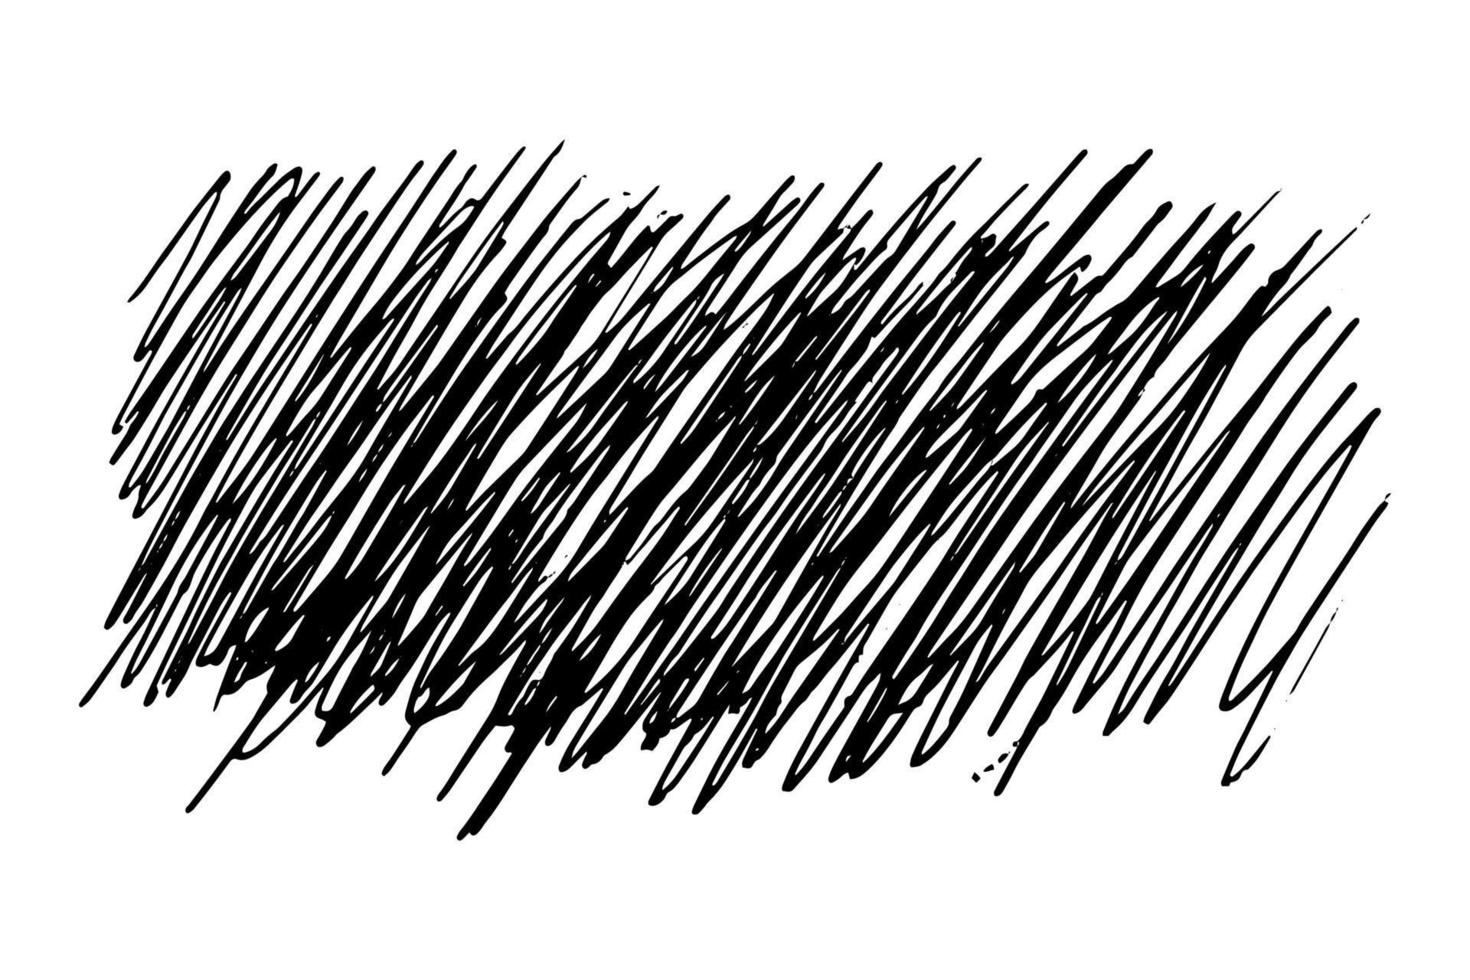 doodle ziguezagues estilo do doodle. fundo mão desenhada descuidadamente - ilustração do vetor isolada no fundo branco. repetindo caligrafia